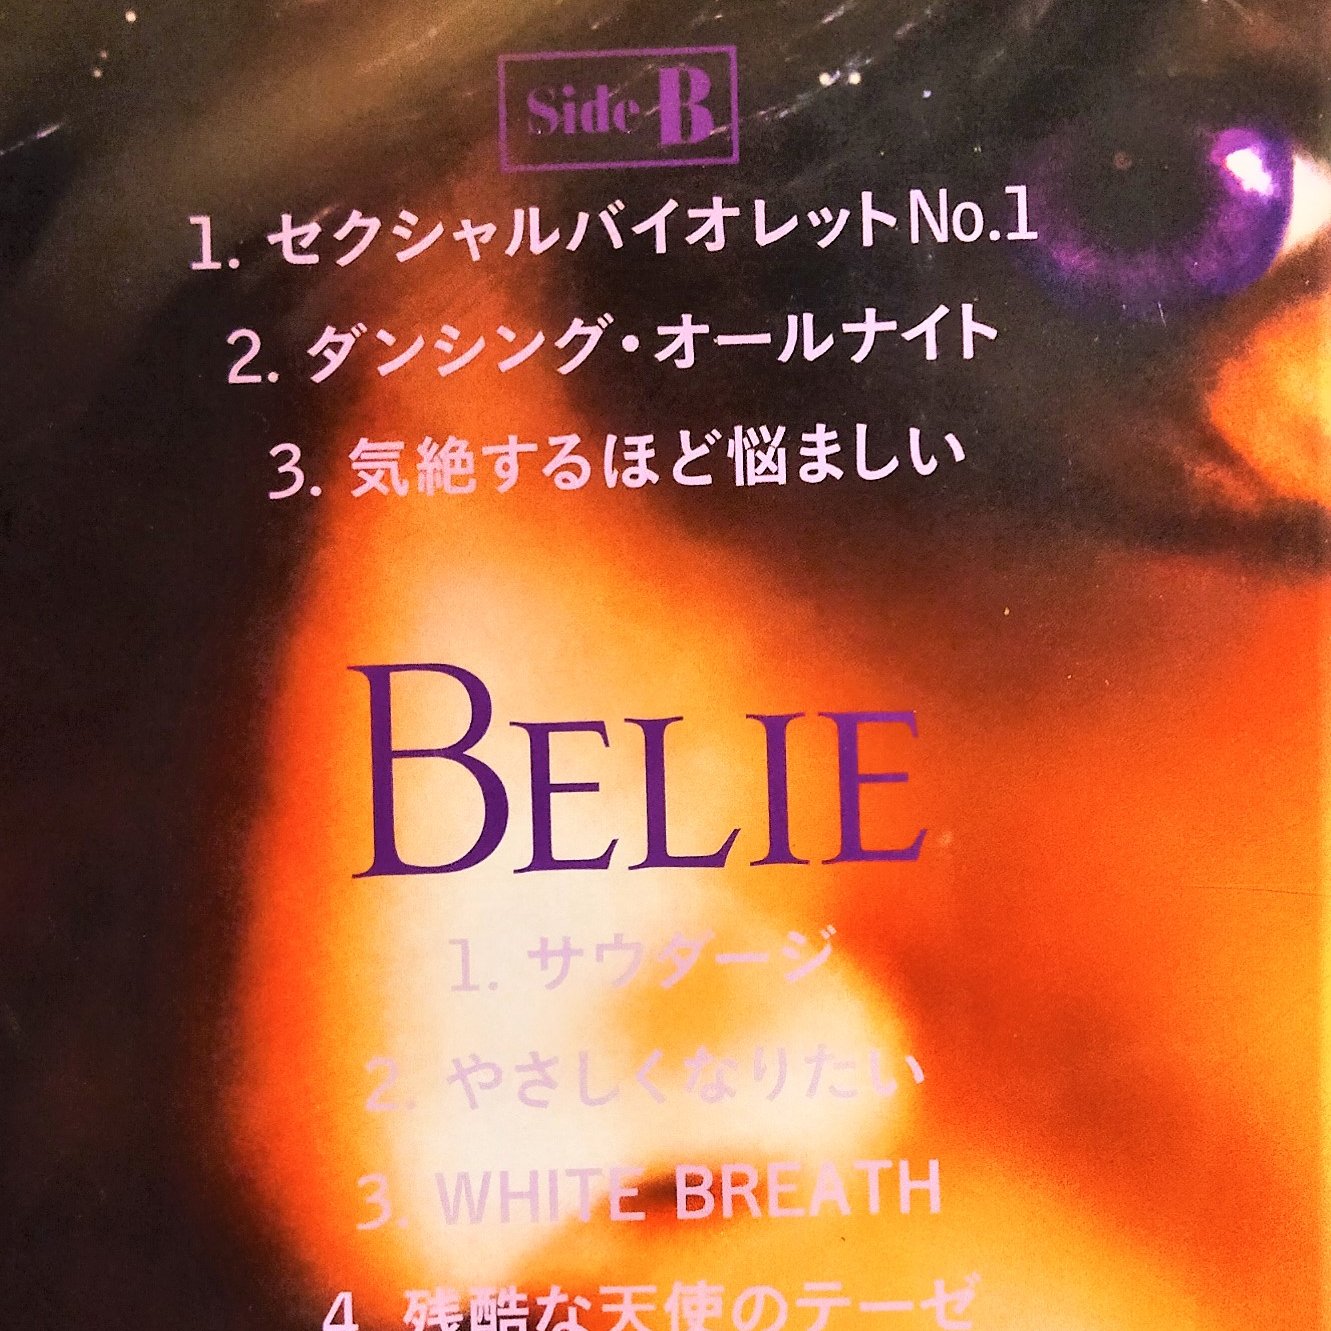 中森明菜Akina ~ Belie + Vampire [完全生産限定クリスマス盤] [UHQCD 